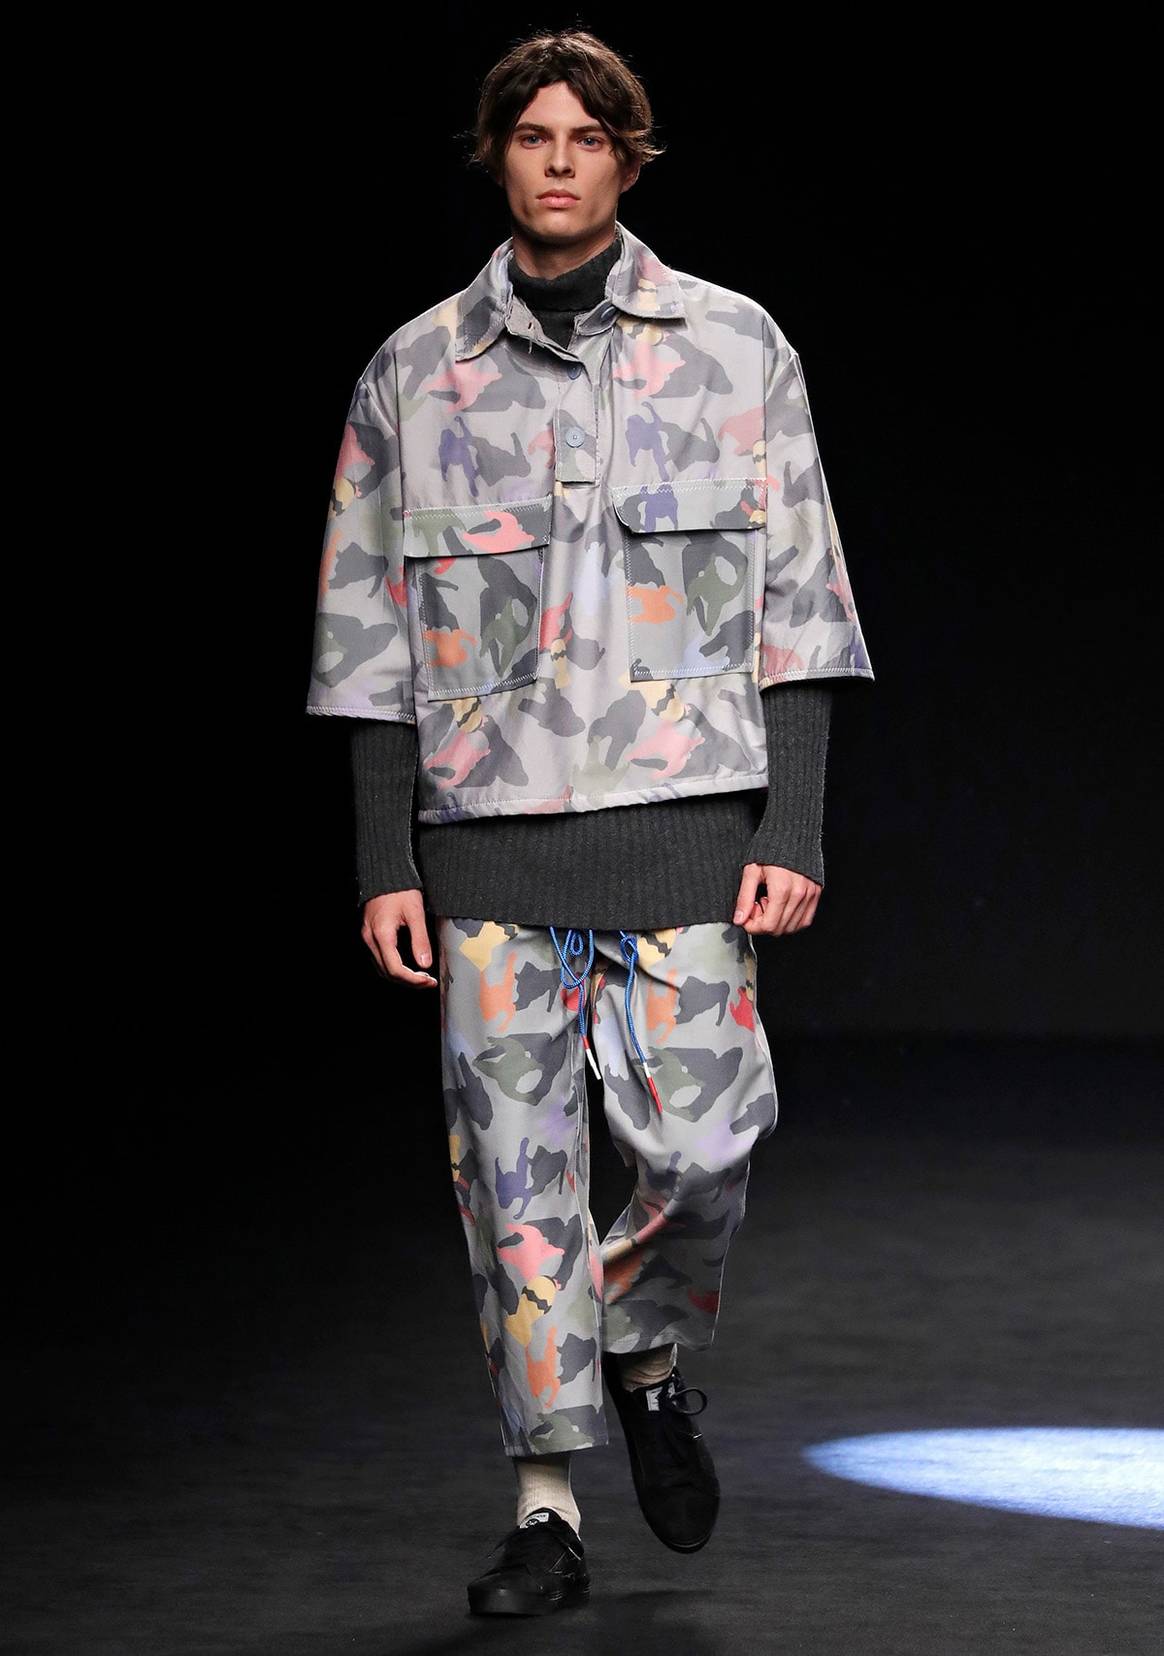 La moda “re-use” de Rubearth, ganadora del premio Mercedes-Benz Fashion Talent